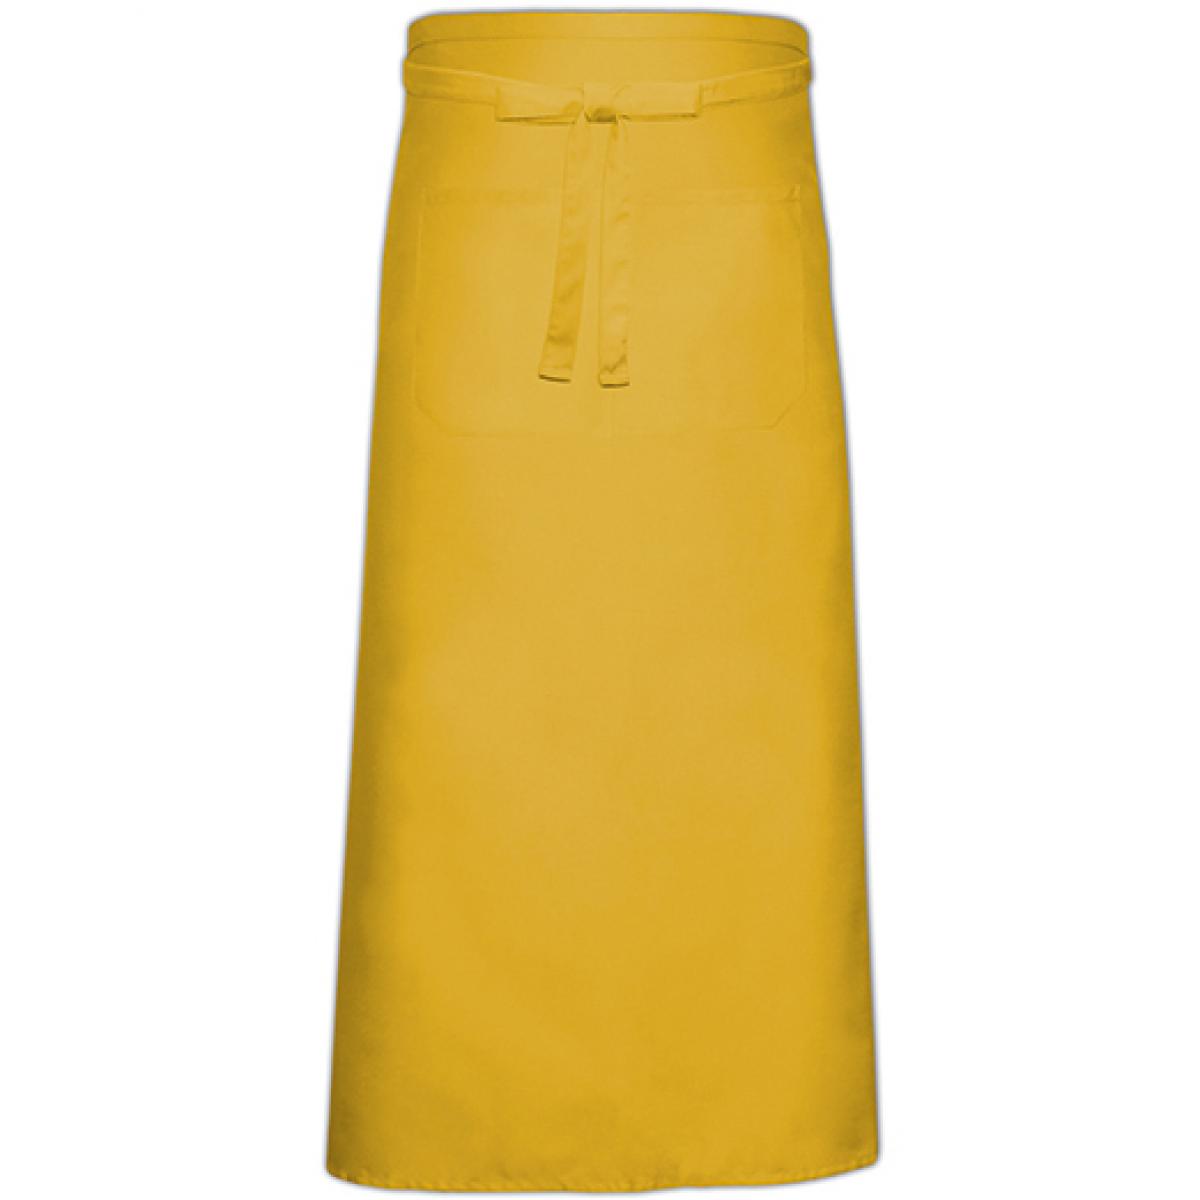 Hersteller: Link Kitchen Wear Herstellernummer: FS100120 Z Artikelbezeichnung: Bistro Apron XL with Front Pocket - 120 x 100 cm Farbe: Yellow